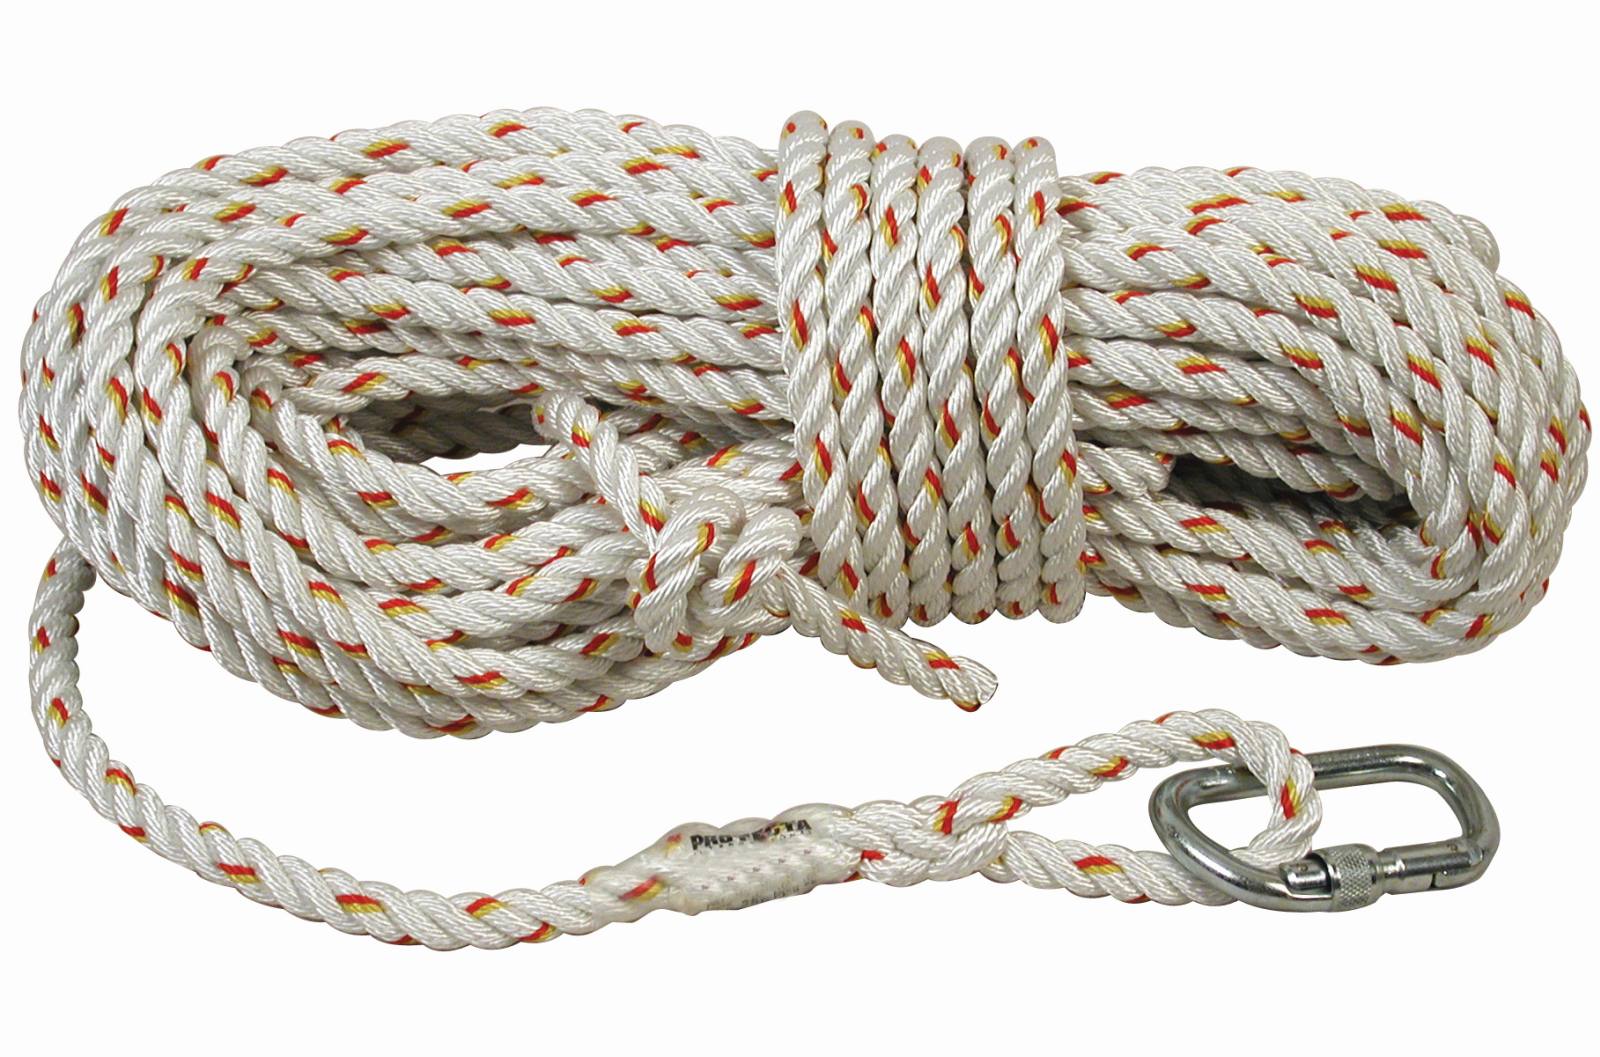 3M PROTECTA Seil für mitlaufendes Auffanggerät Cobra, Länge: 15 m, gedrehtes Seil 14 mm Ø, AJ501 Karabiner Öffnungsweite 17 mm